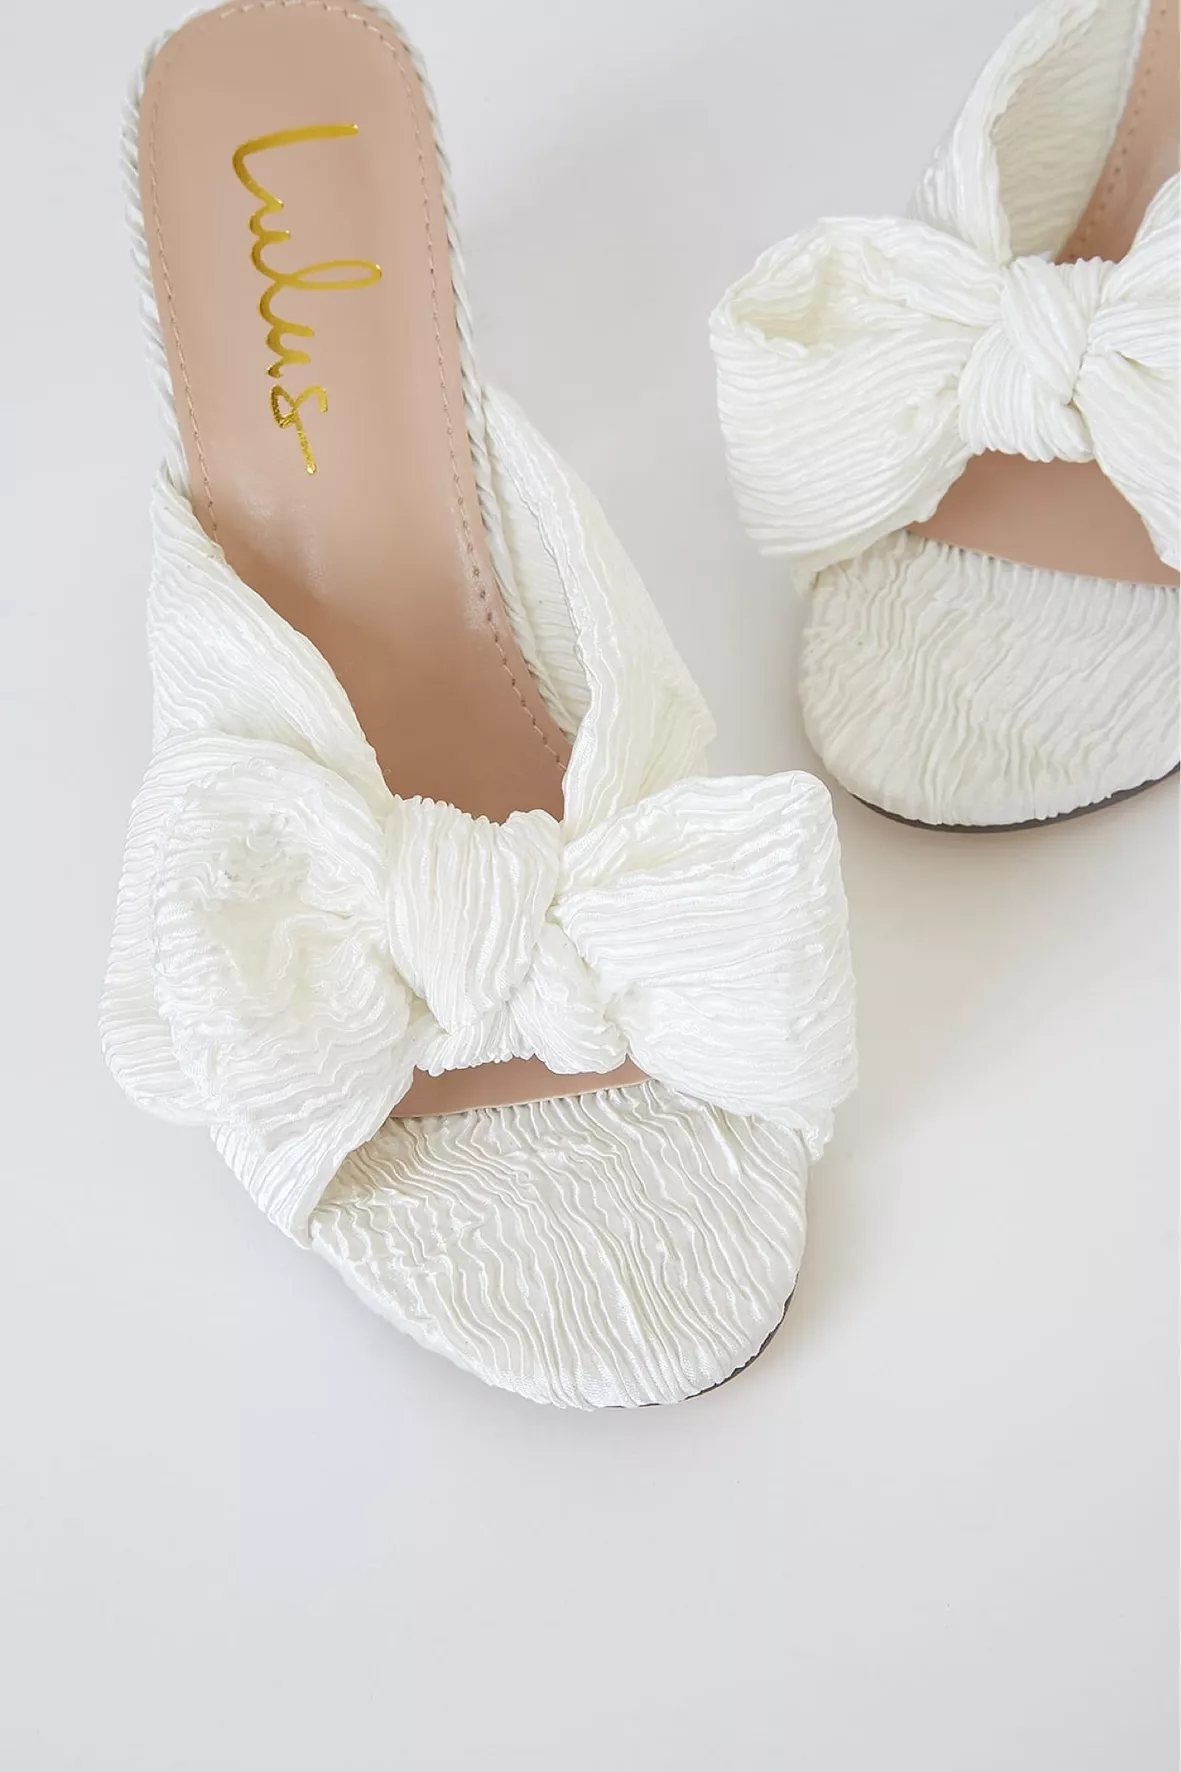 Babie White Strappy High Heel Sandals